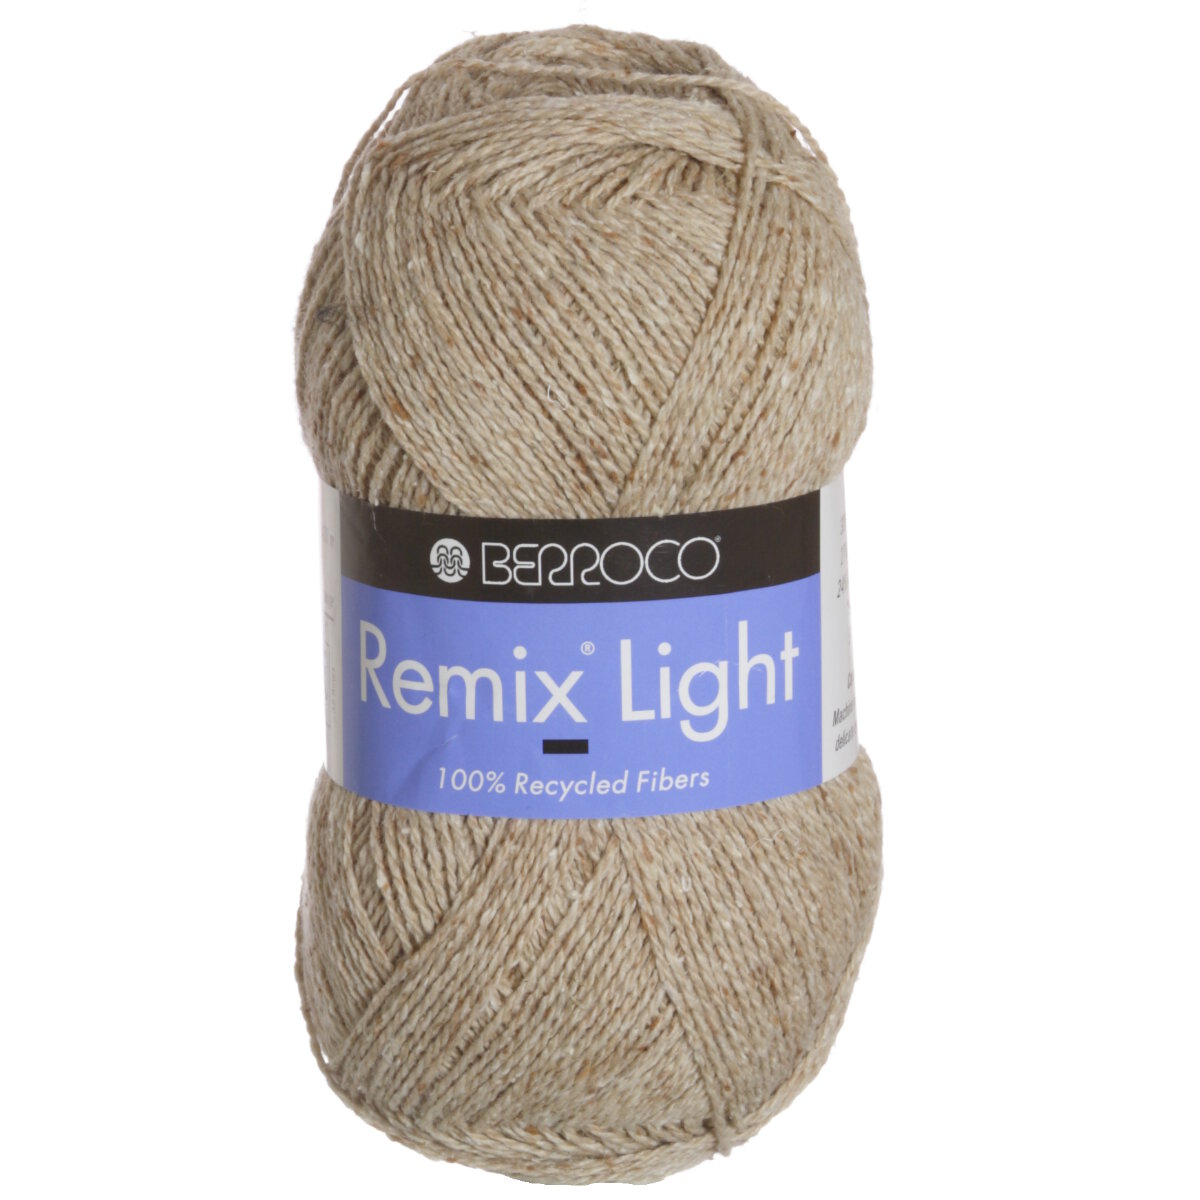 Berroco Remix Light Yarn - 6903 Almond at Jimmy Beans Wool